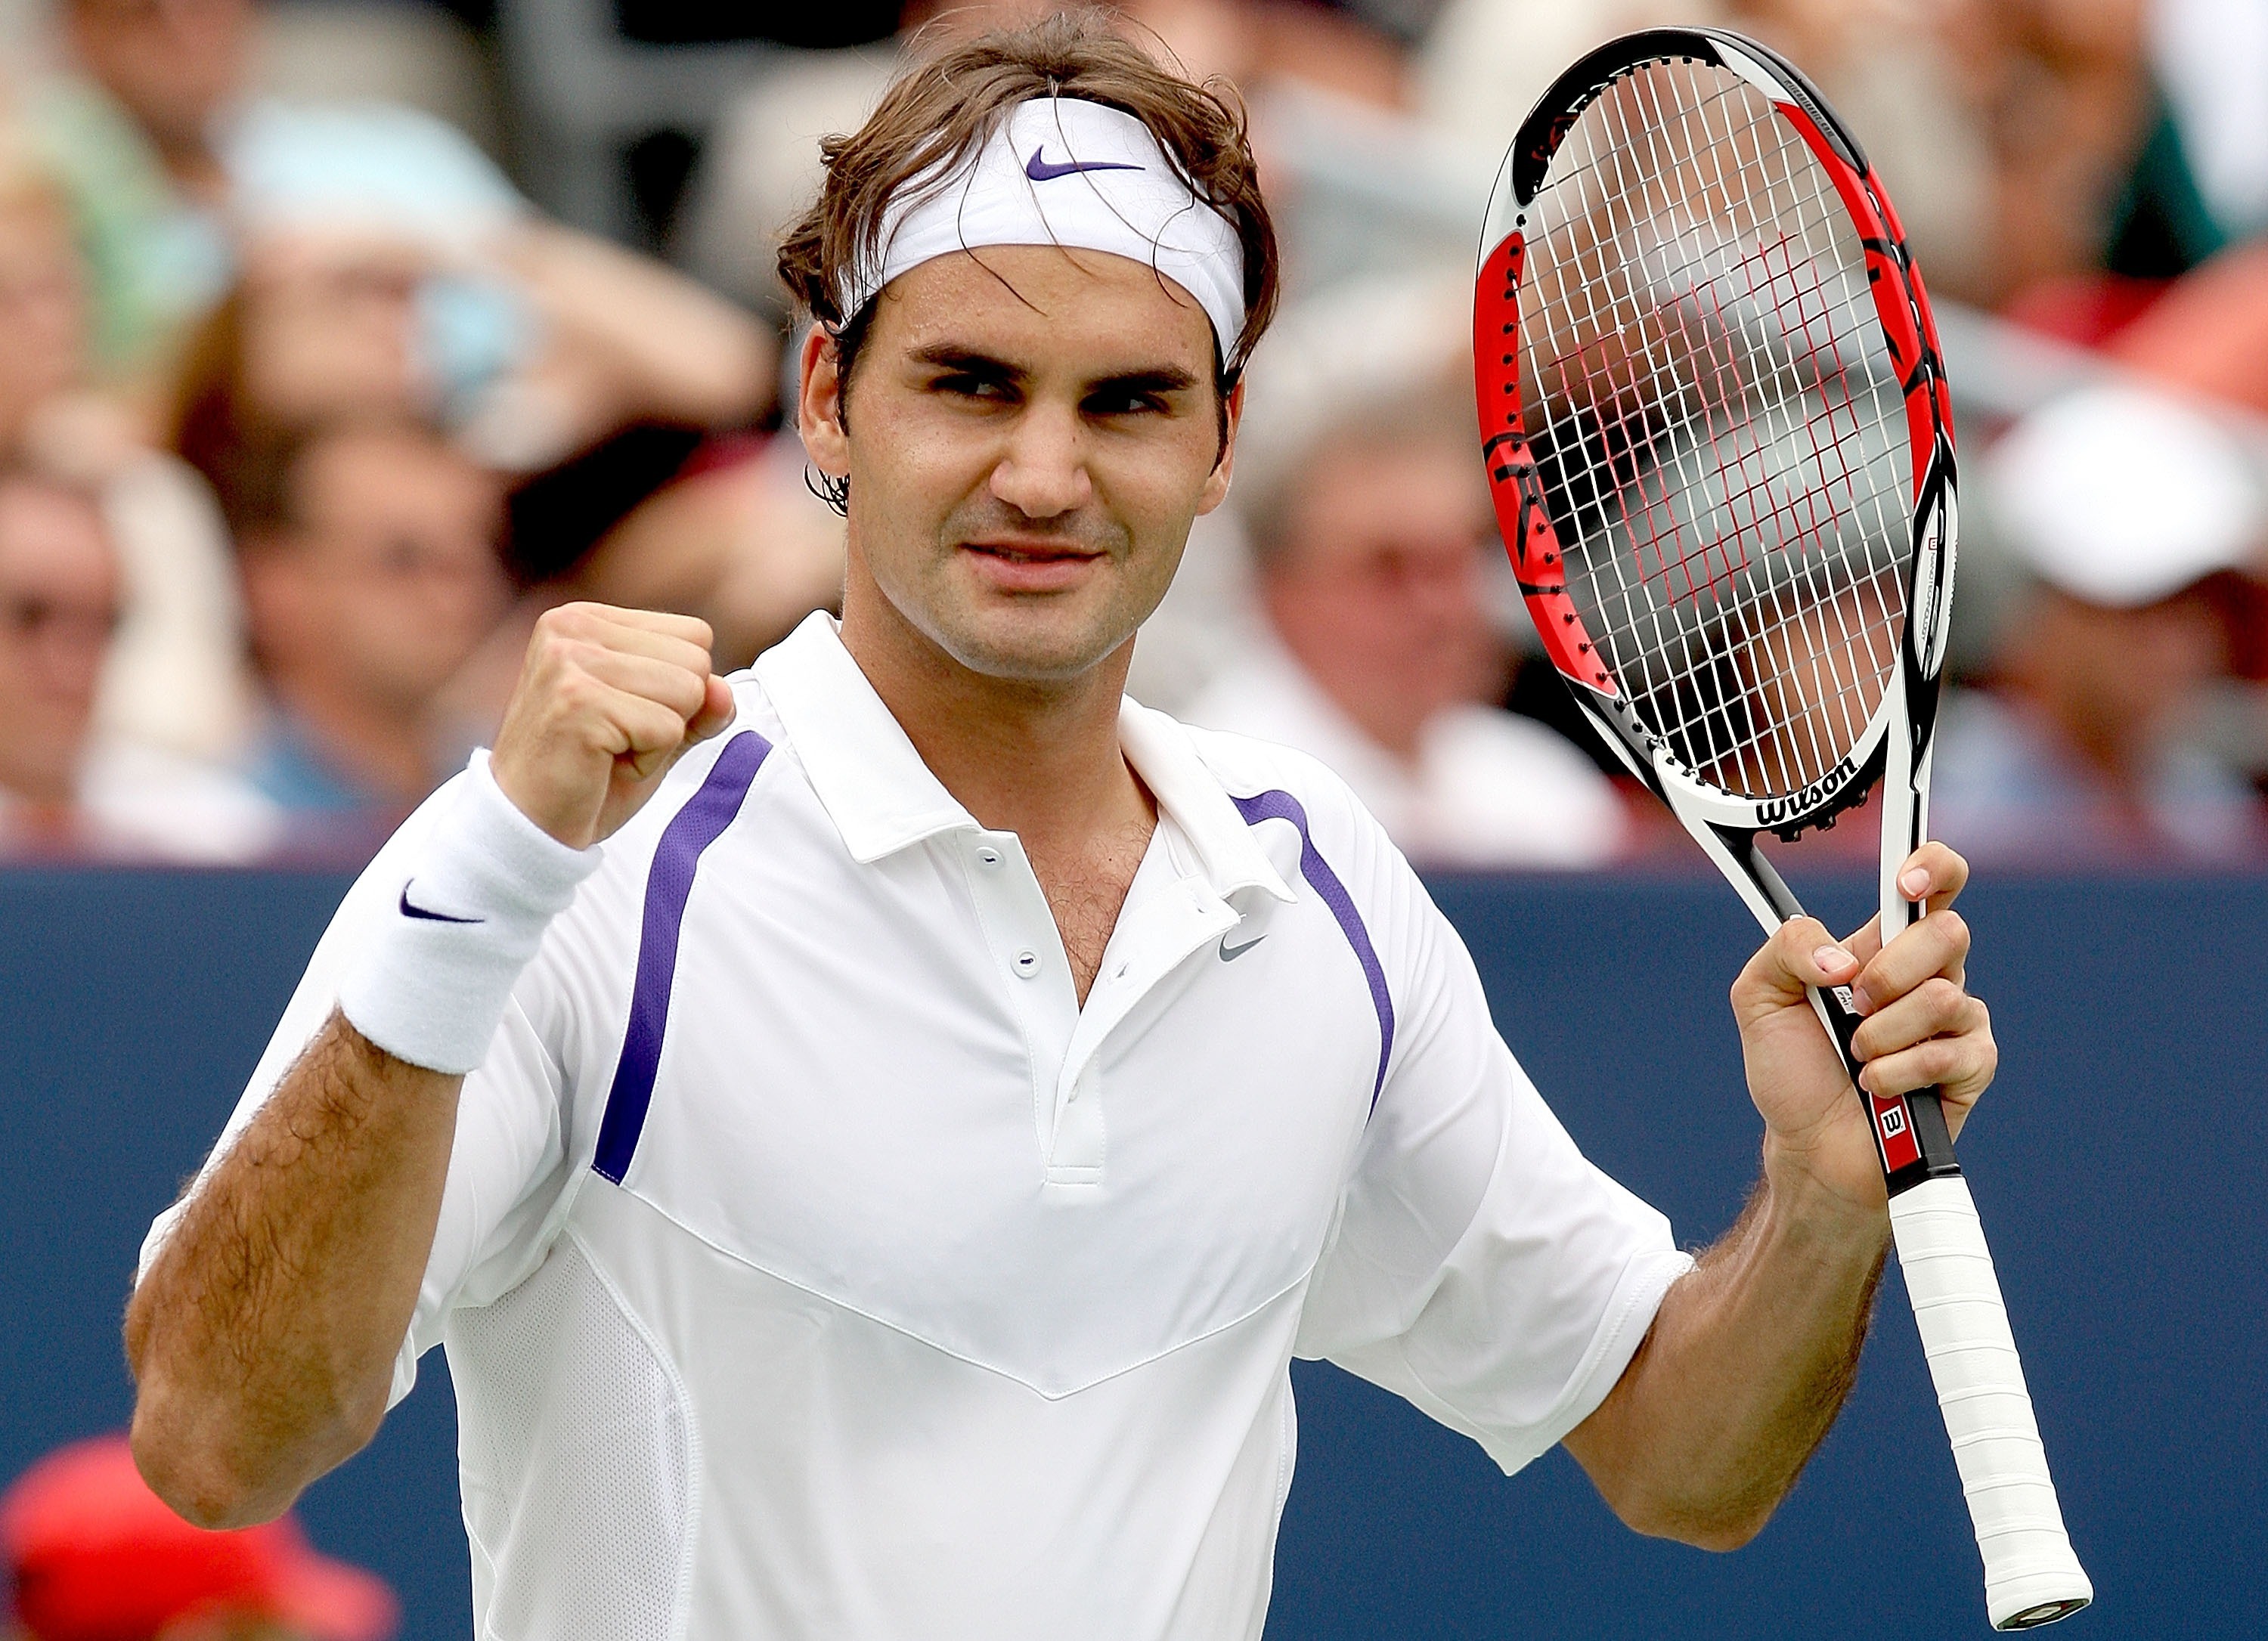 Download mobile wallpaper Roger Federer, Sports, Tennis, Men for free.